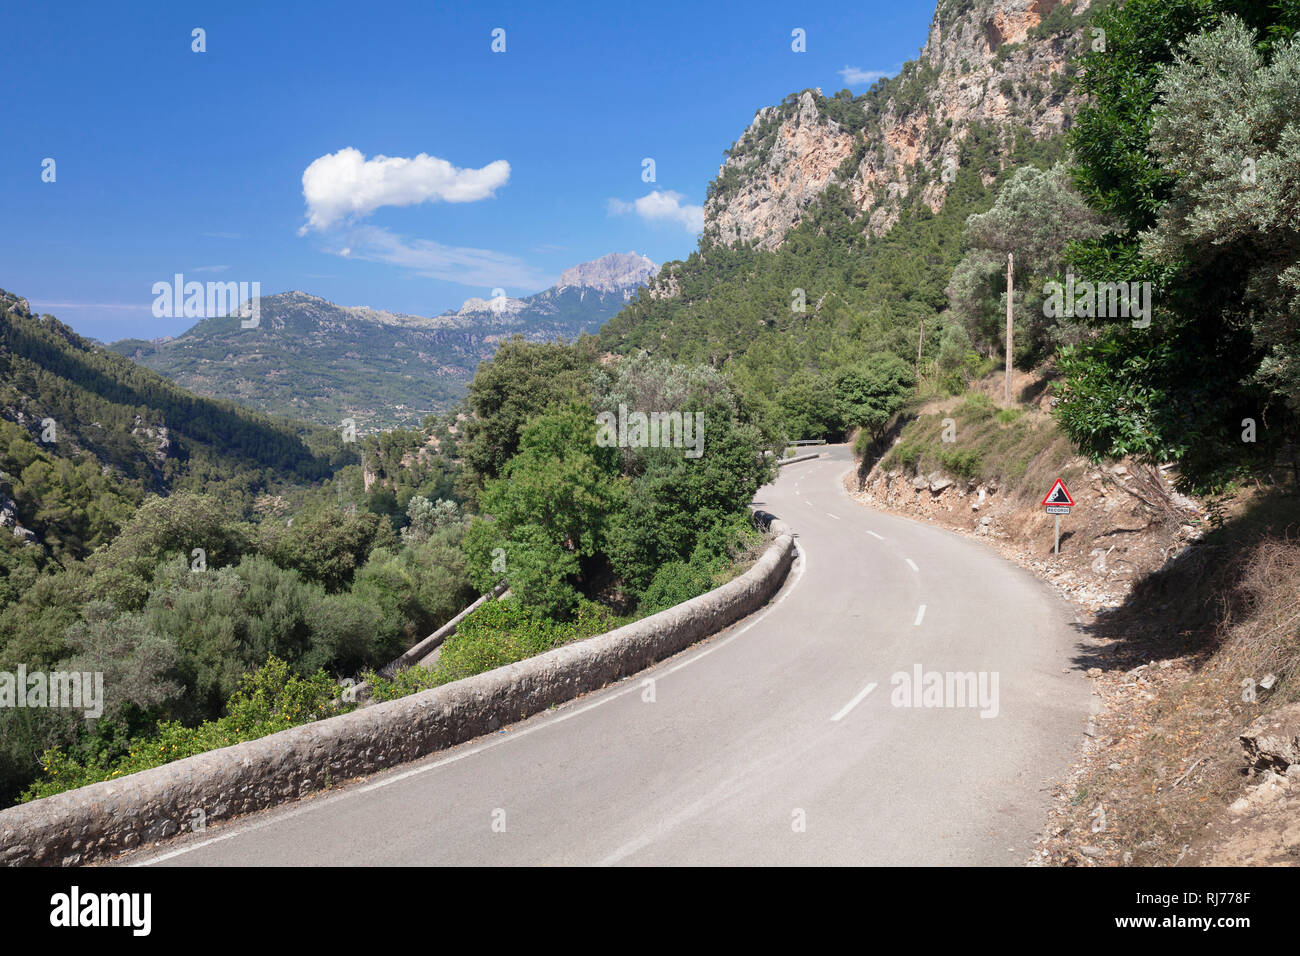 Blick vom Pass Coll de Soller auf die Sierra de Tramuntana, nahe Soller, Mallorca, Balearen, Spanien Stock Photo